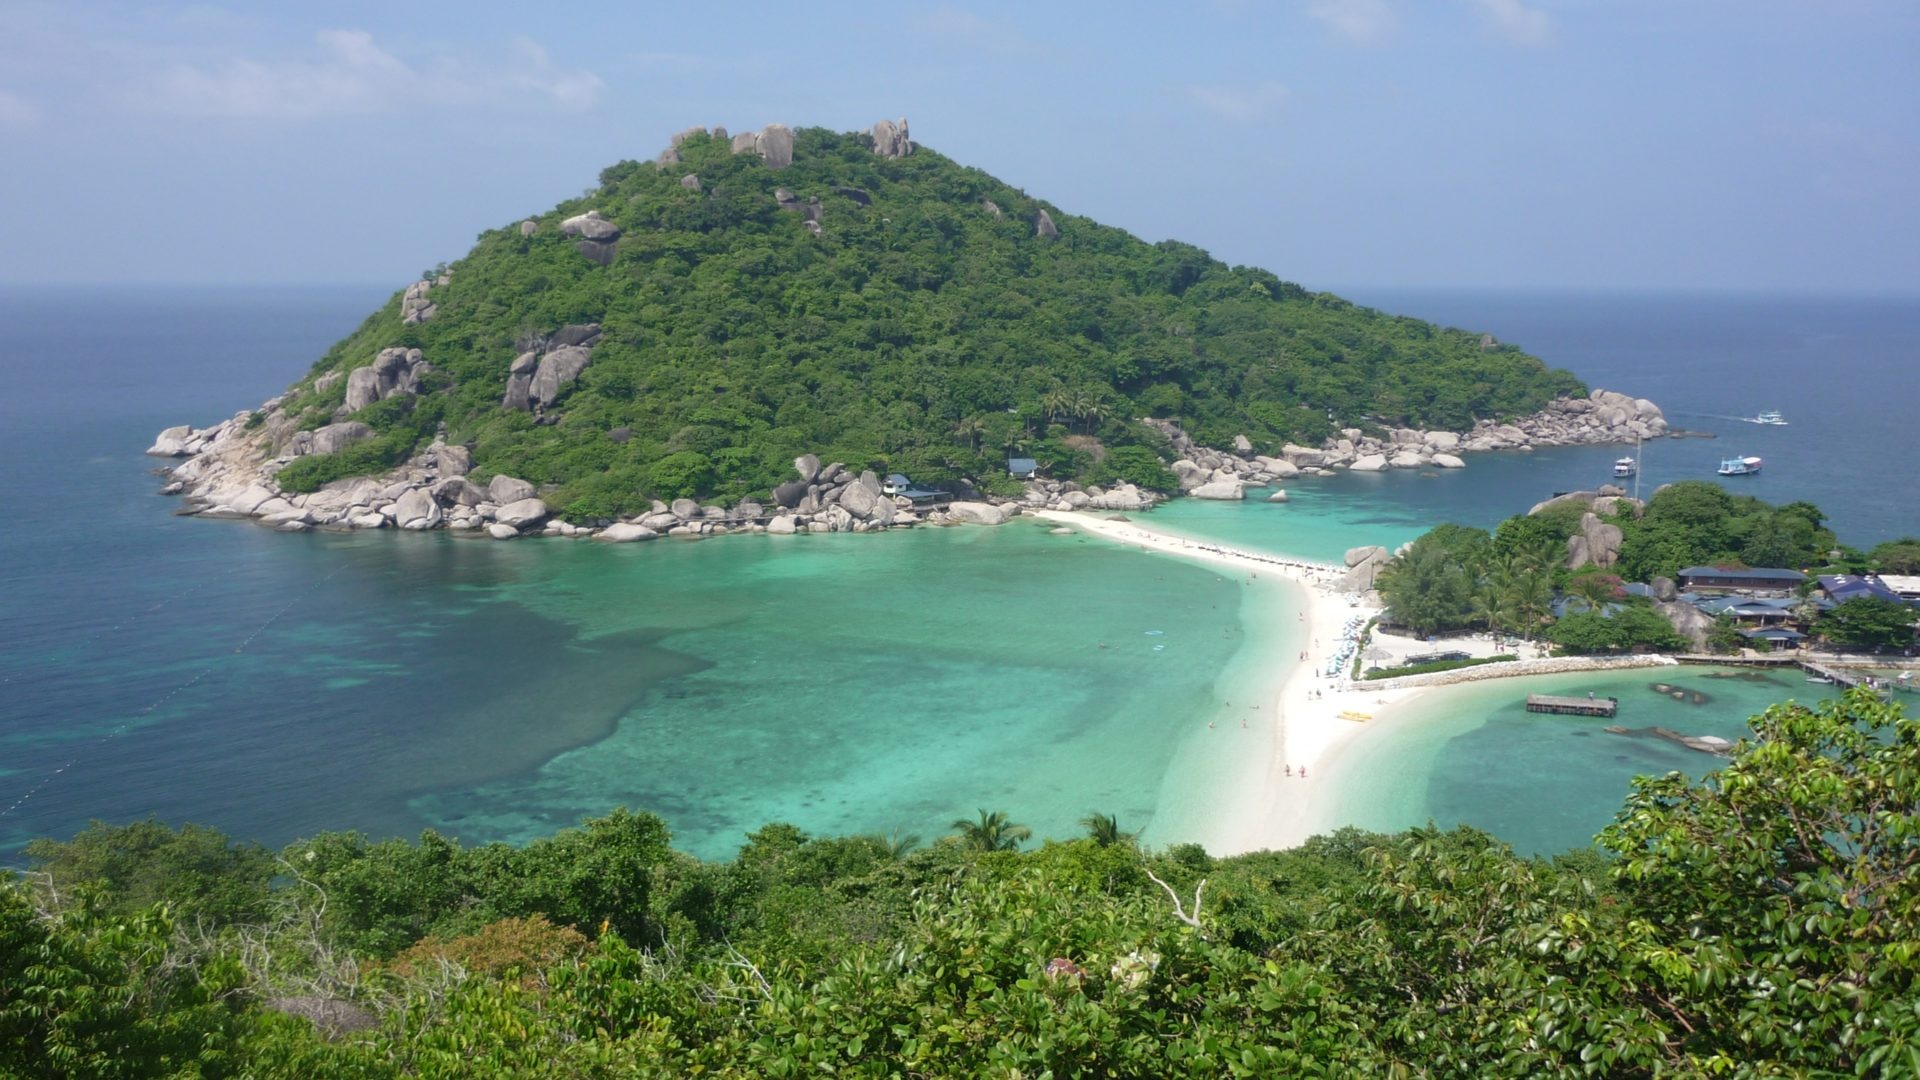 Island safari, Adventure awaits, Koh Samui, Exploring paradise, 1920x1080 Full HD Desktop